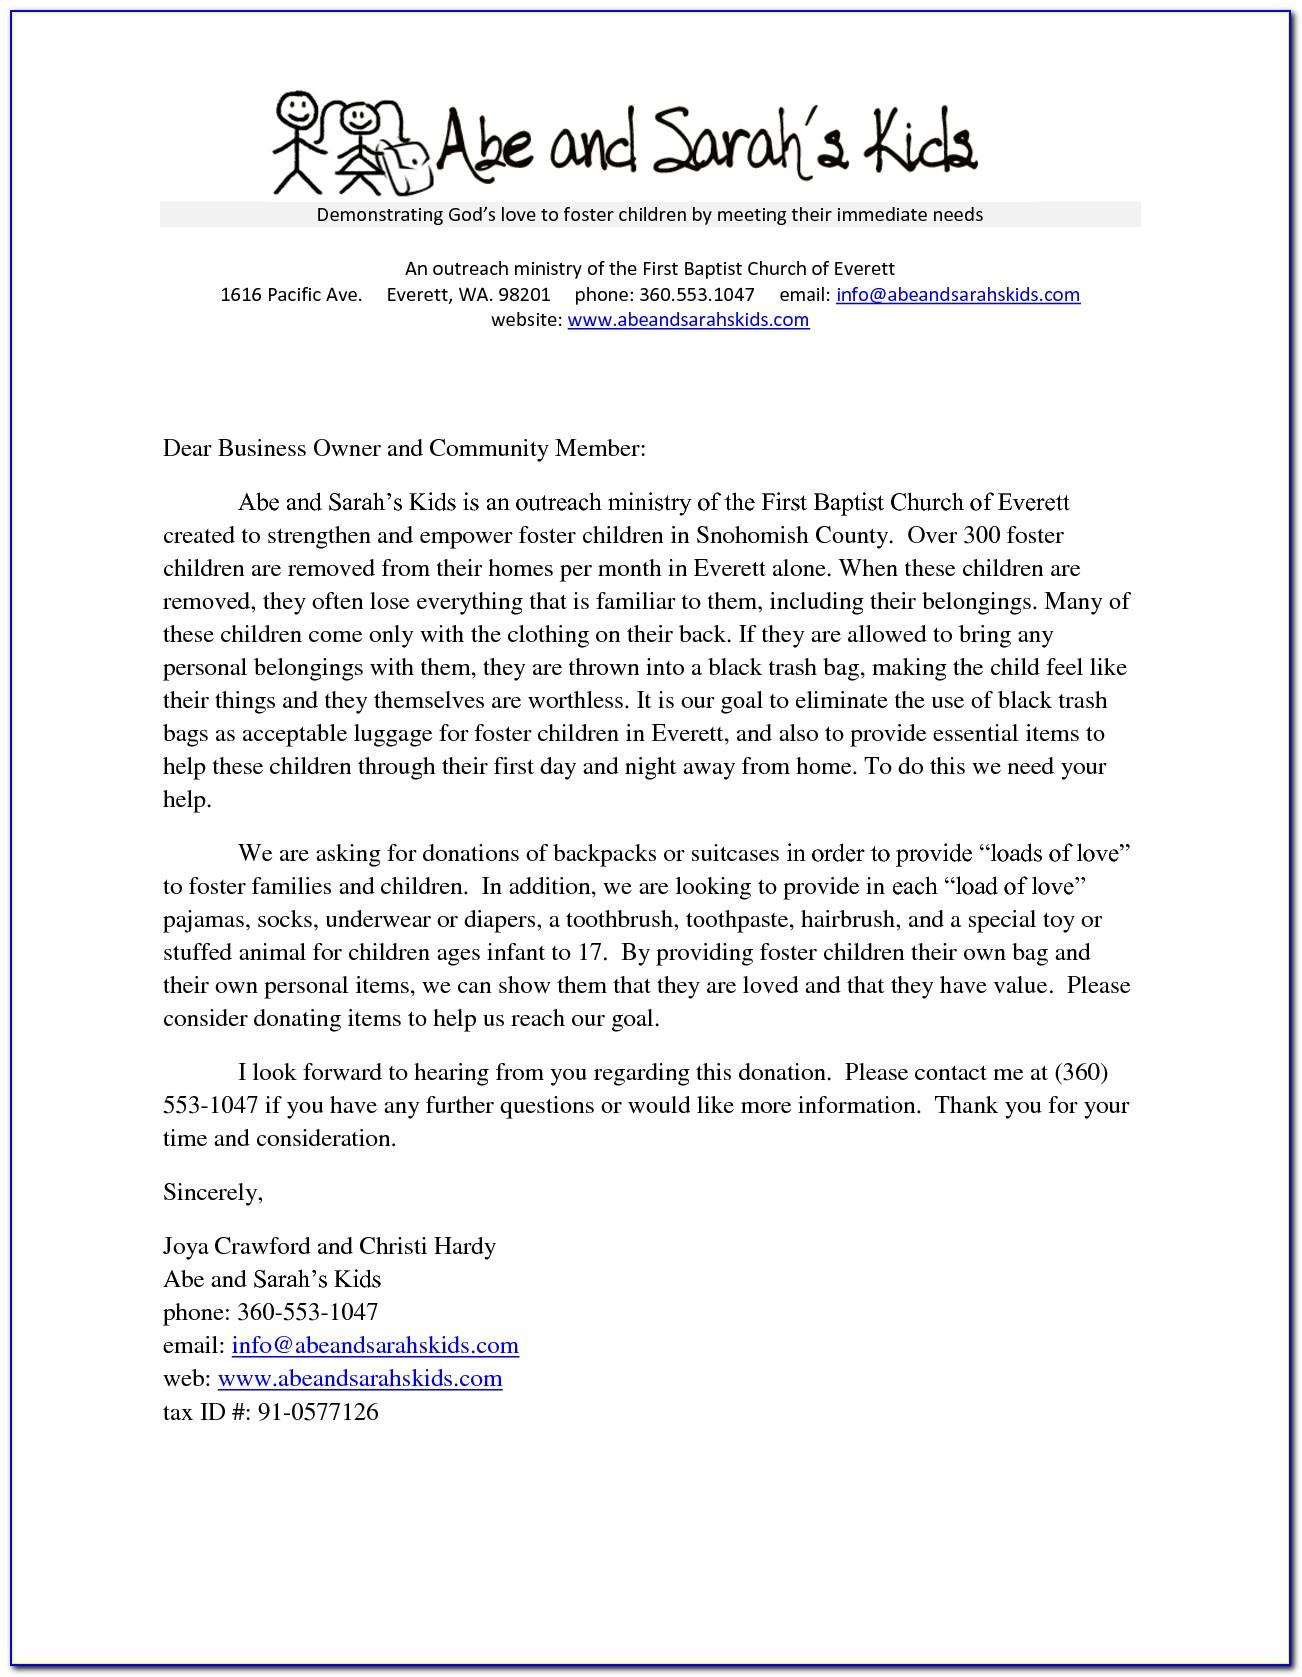 Sample Letter Asking For Donations For School Fundraiser